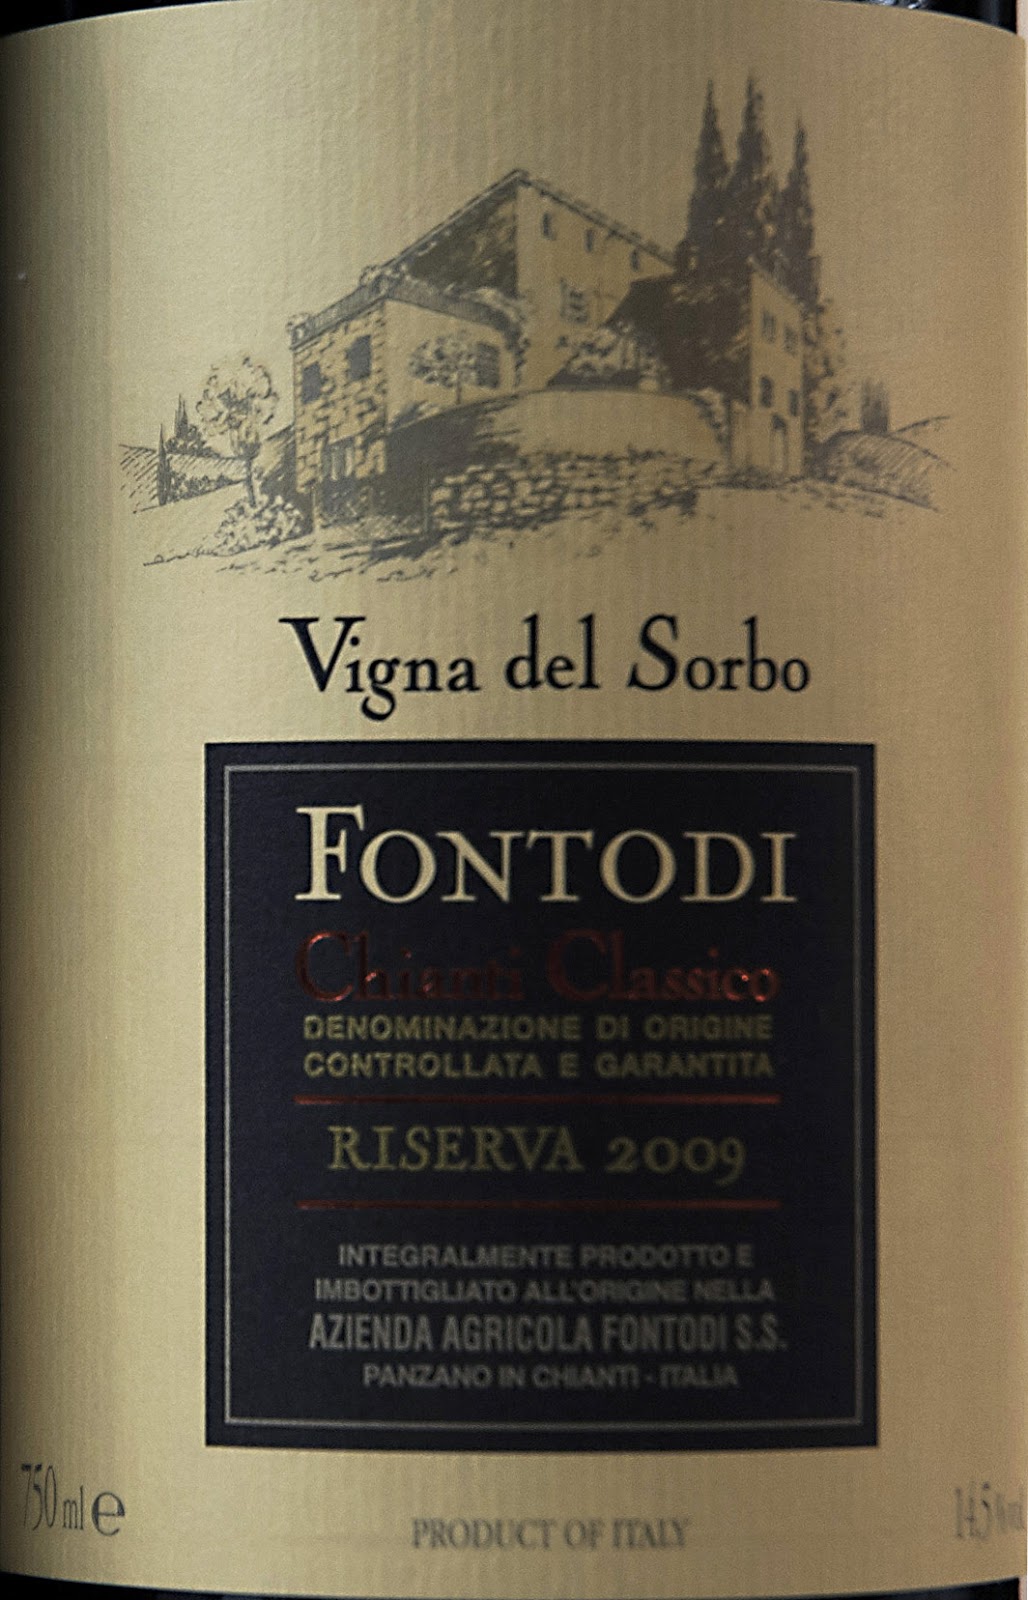 2009 Fontodi Chianti Classico Riserva Vigna Del Sorbo MAGNUM - click image for full description